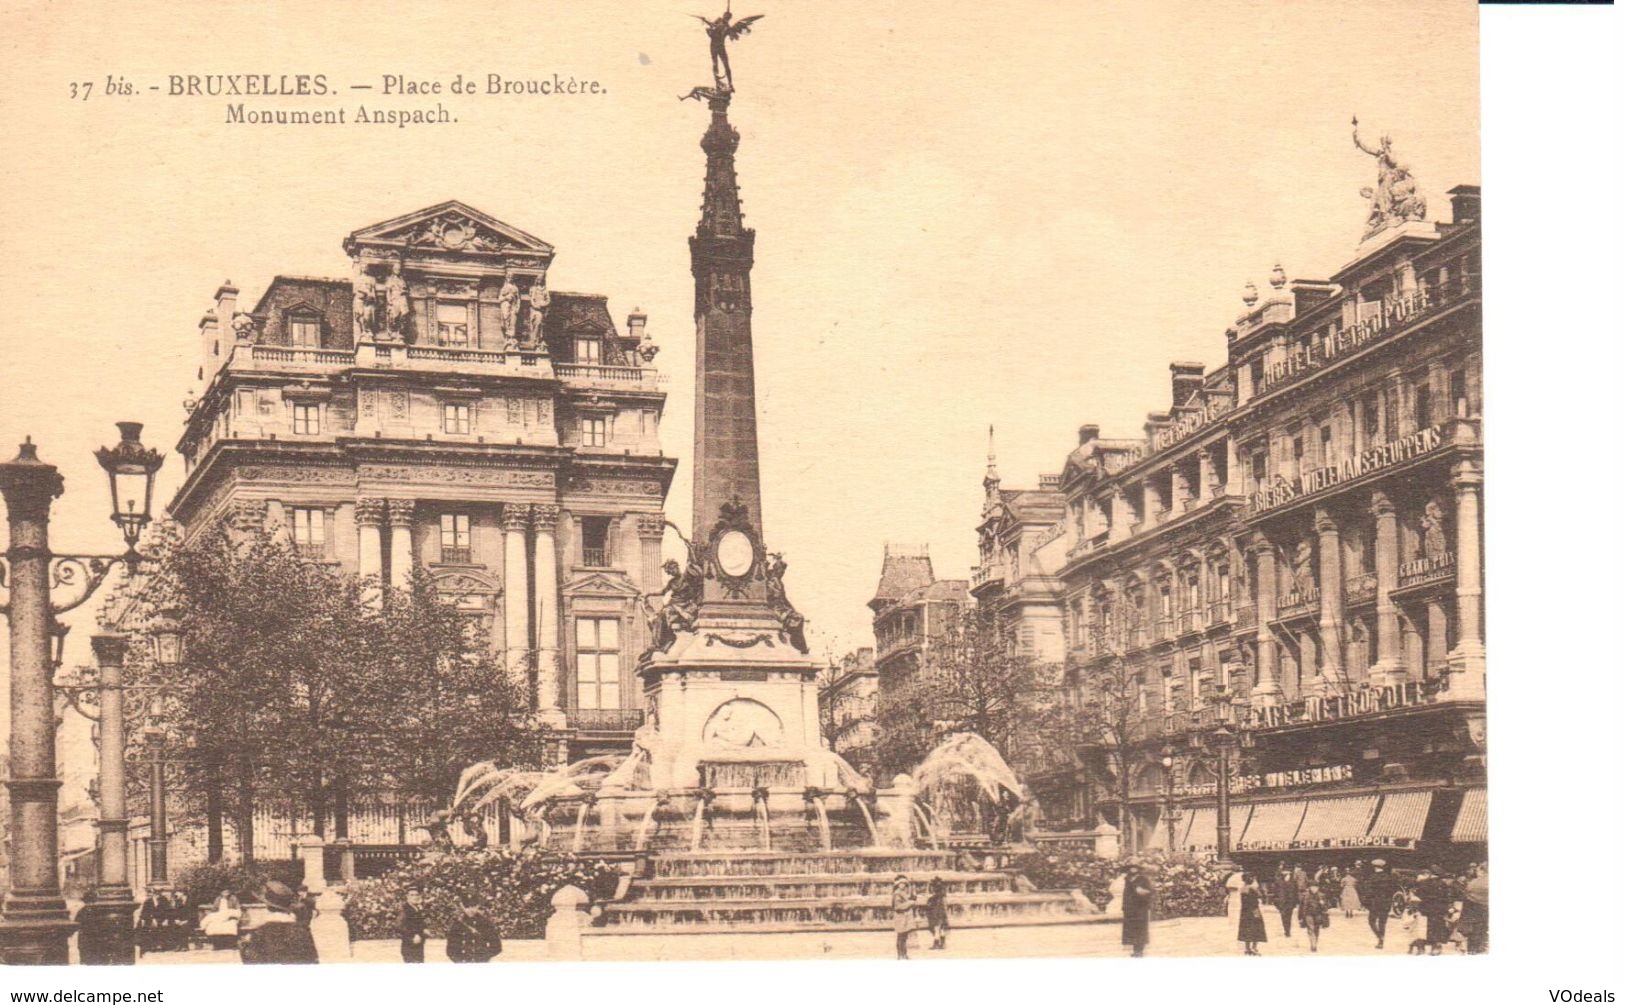 Bruxelles - CPA - Brussel - Place De Brouckère - Monument Anspach - Piazze